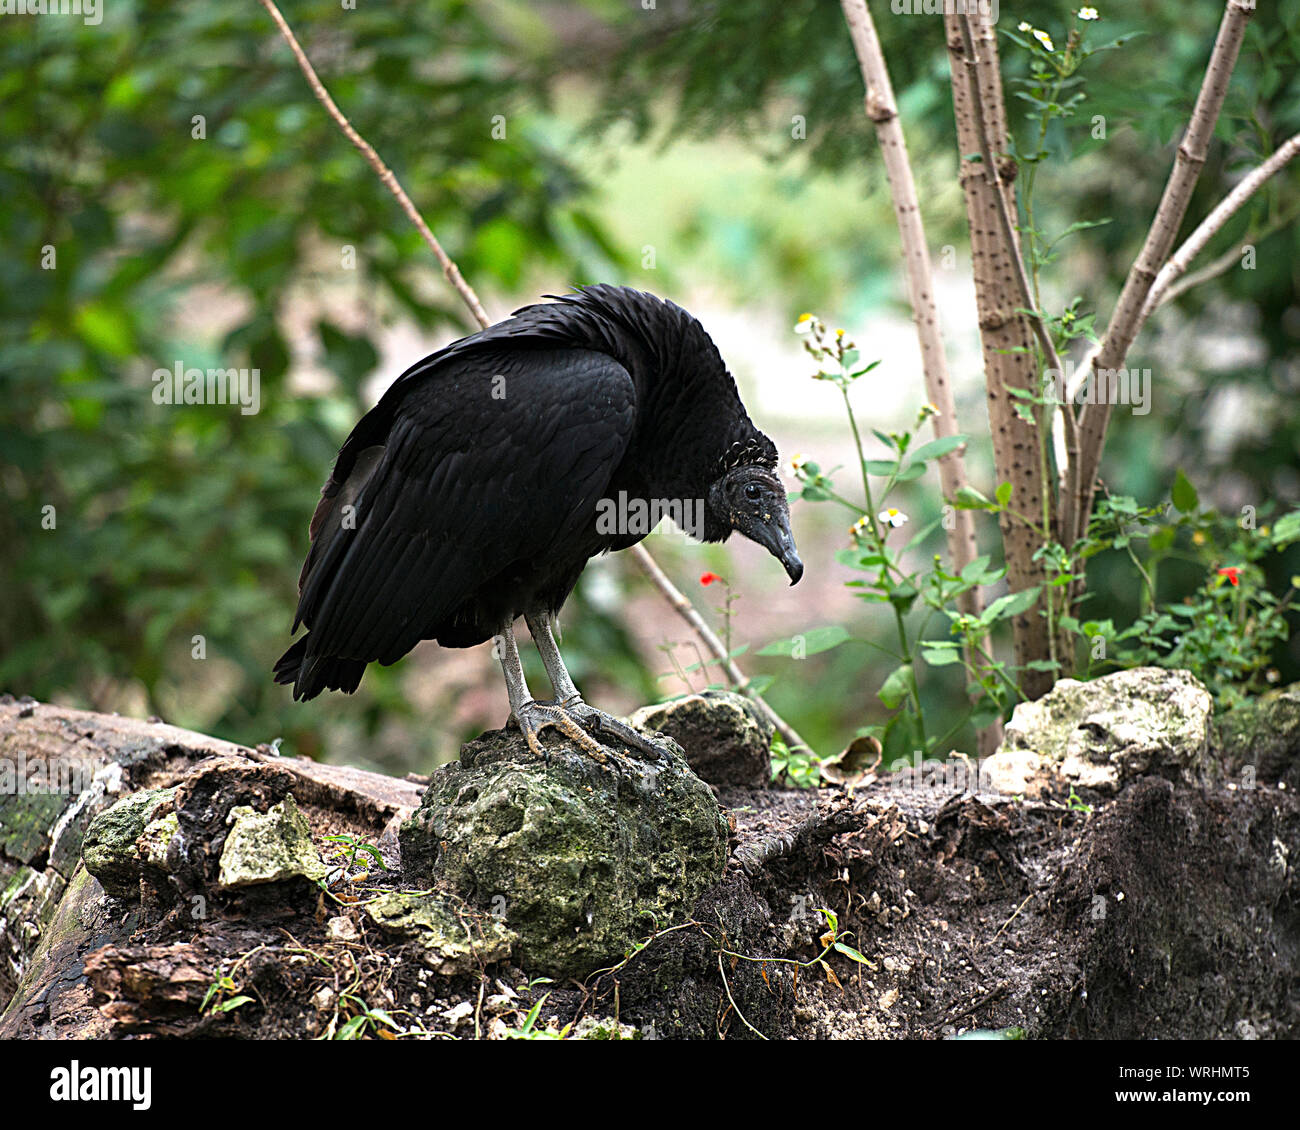 Avvoltoio nero uccello close-up vista di profilo con un sfondo bokeh visualizzazione di piume nere, becco, occhio, grigio testa nel suo ambiente e dintorni. Foto Stock